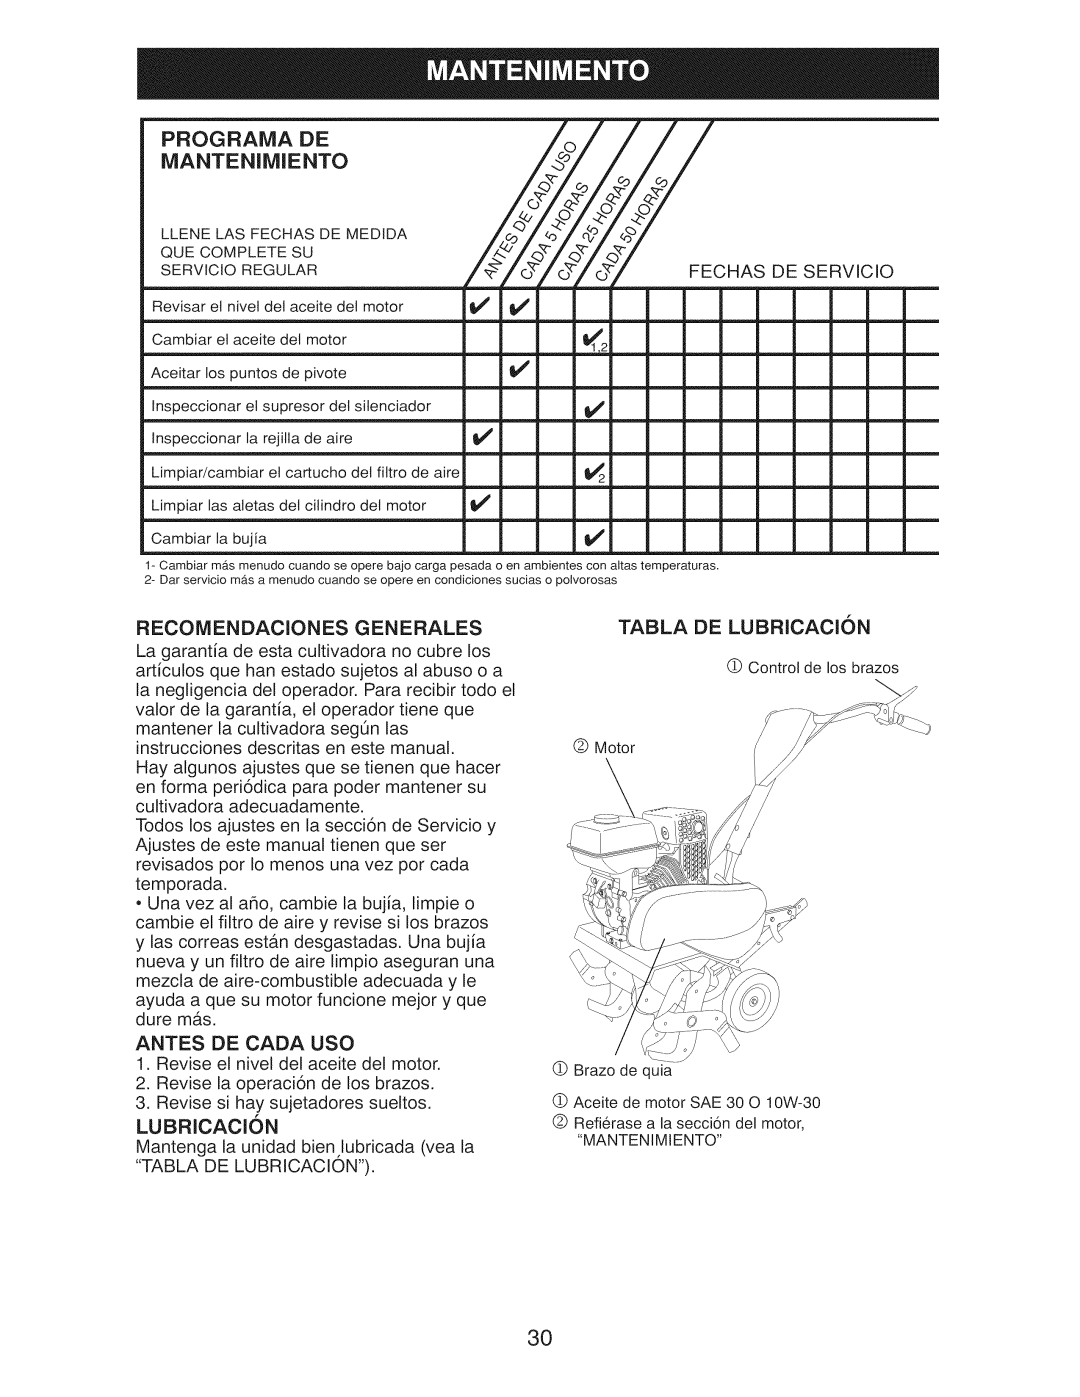 Craftsman 917.29921 owner manual Programa De Mantenimiento, Recomendaciones Generales, Antes De Cada Uso, Lubricacion 